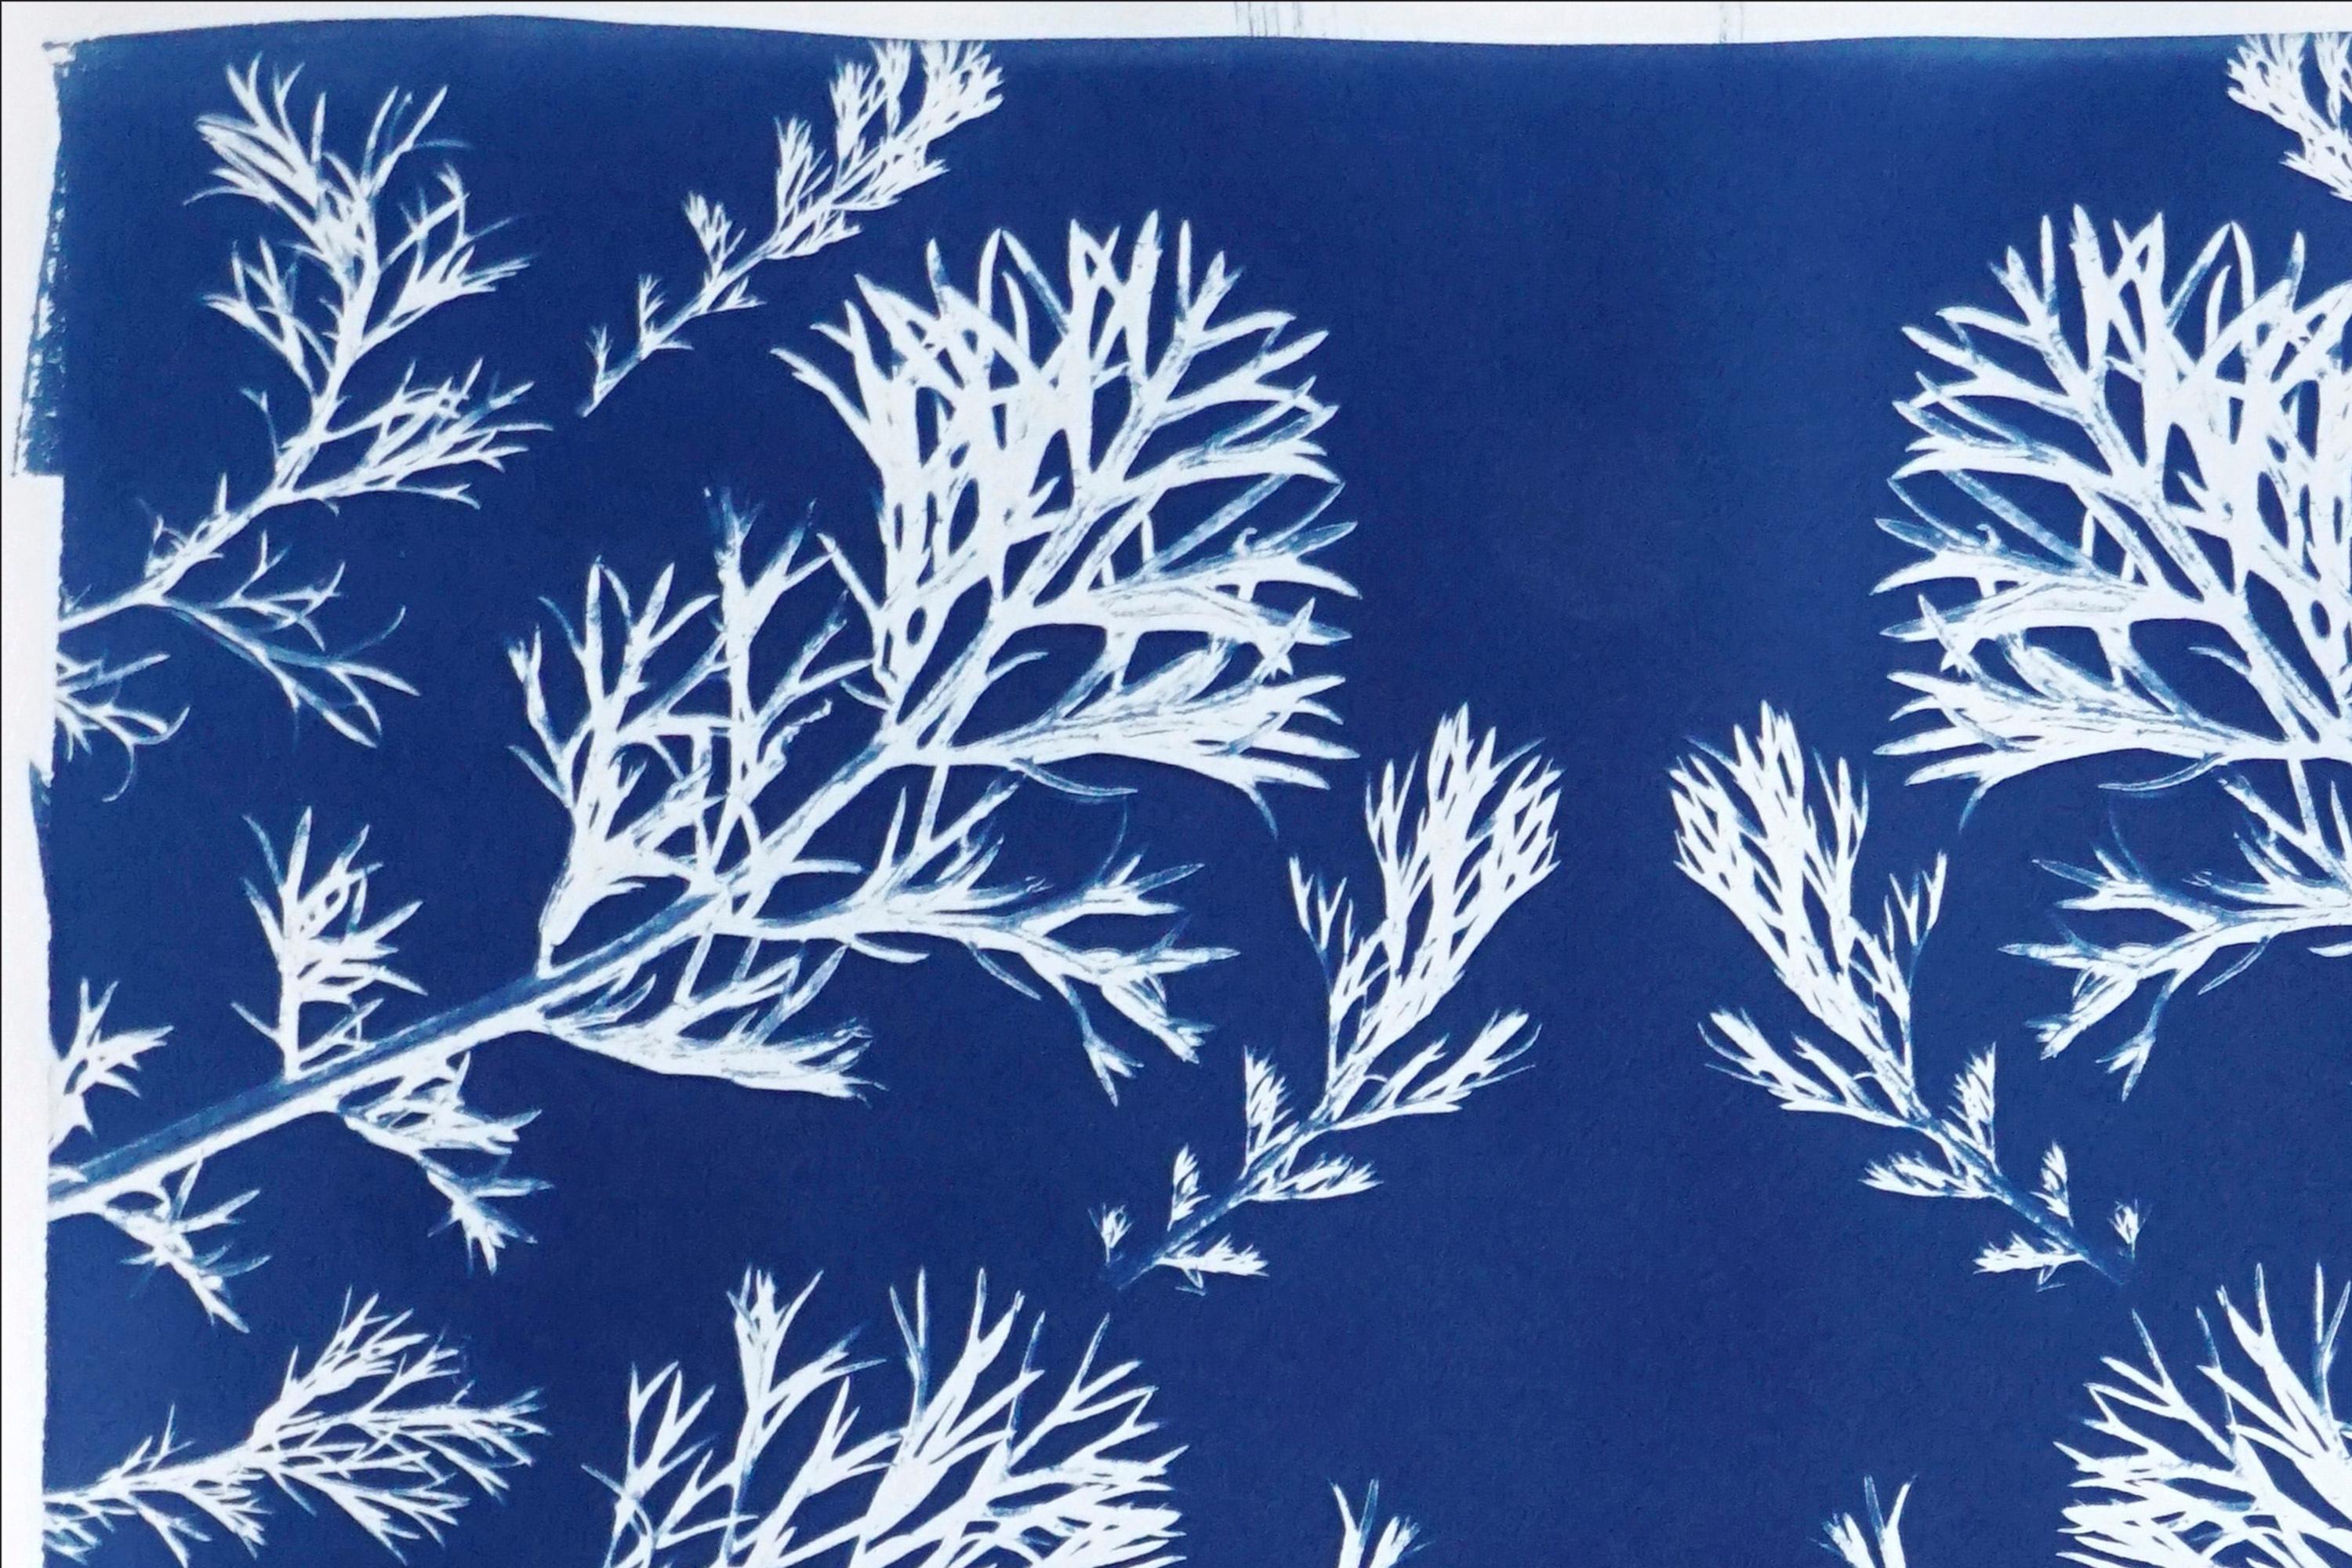 Klassische botanische Zyanotypie, handgefertigt mit natürlichem Sonnenlicht, limitierte Auflage  (Blau), Still-Life Print, von Kind of Cyan